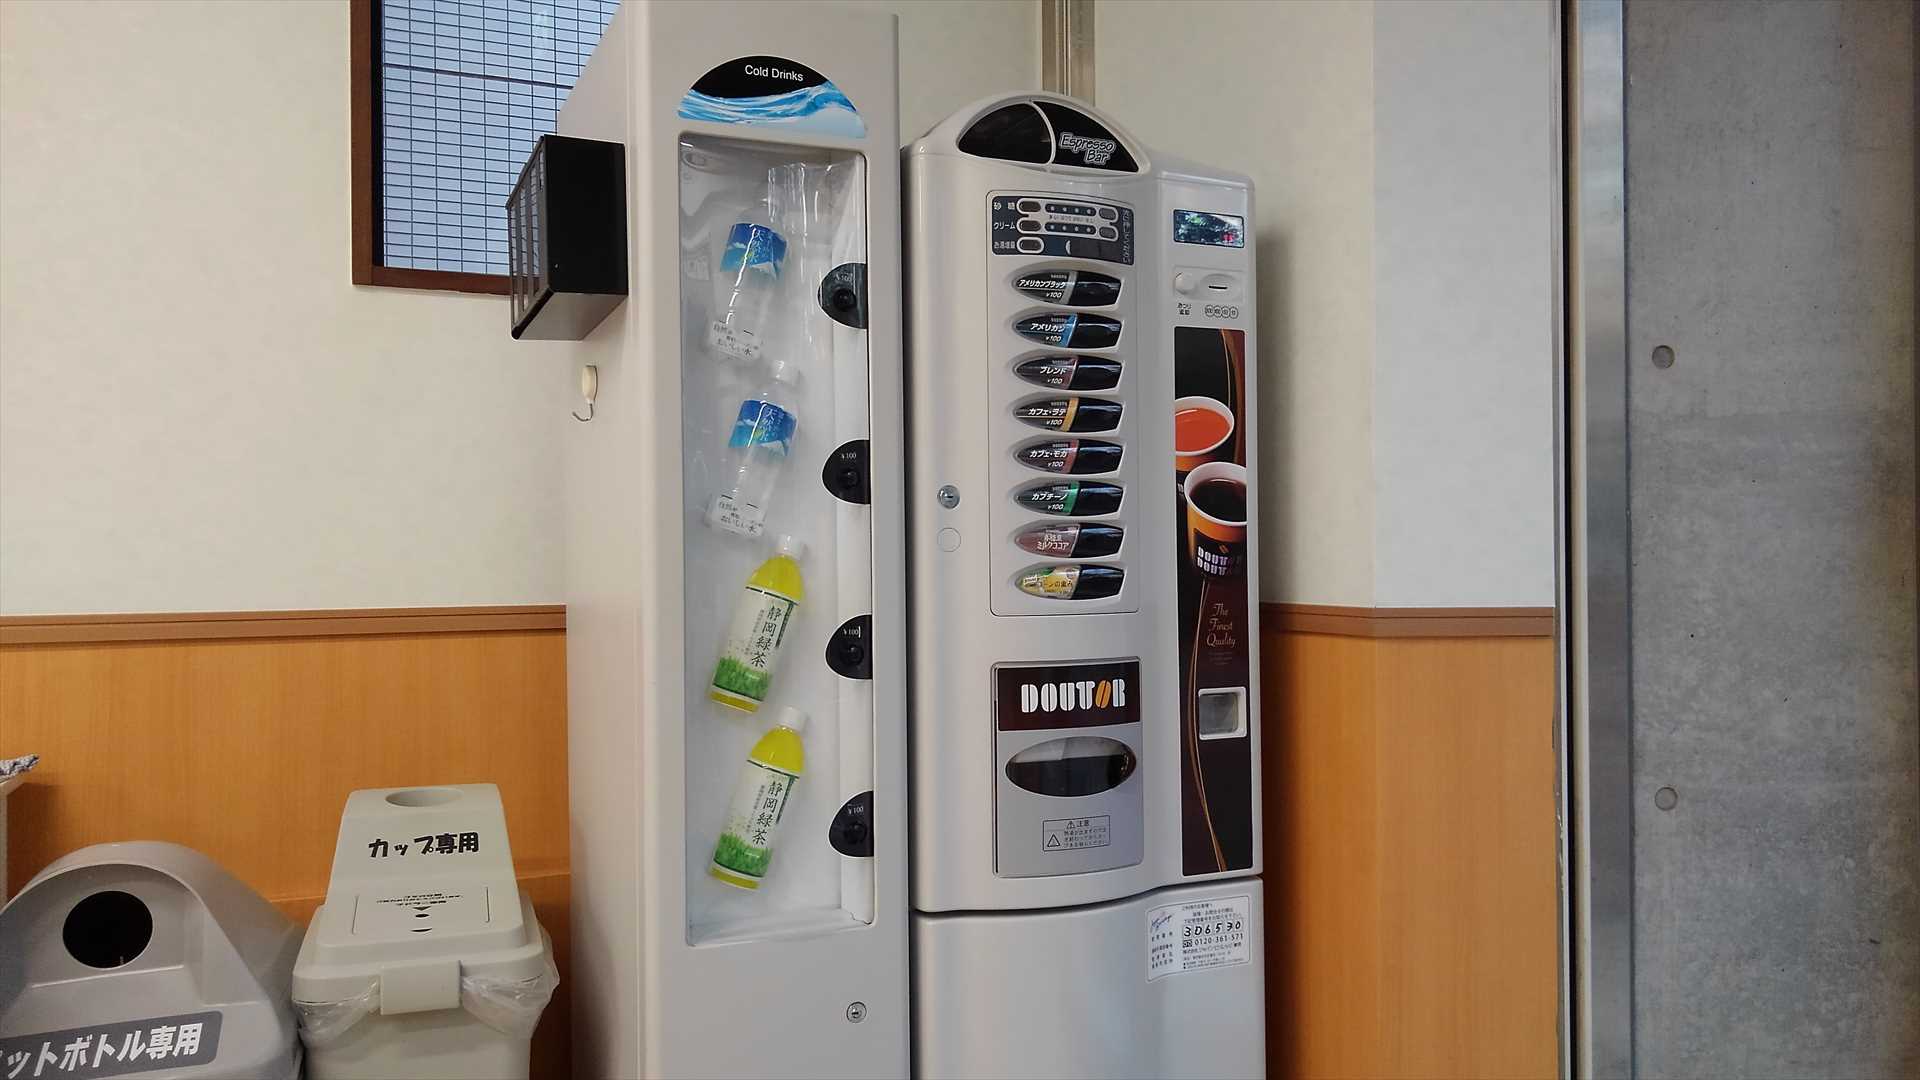 「大型コインランドリーマンマチャオ桜新町店」(東京都世田谷区)のドトールカップコーヒー自販機